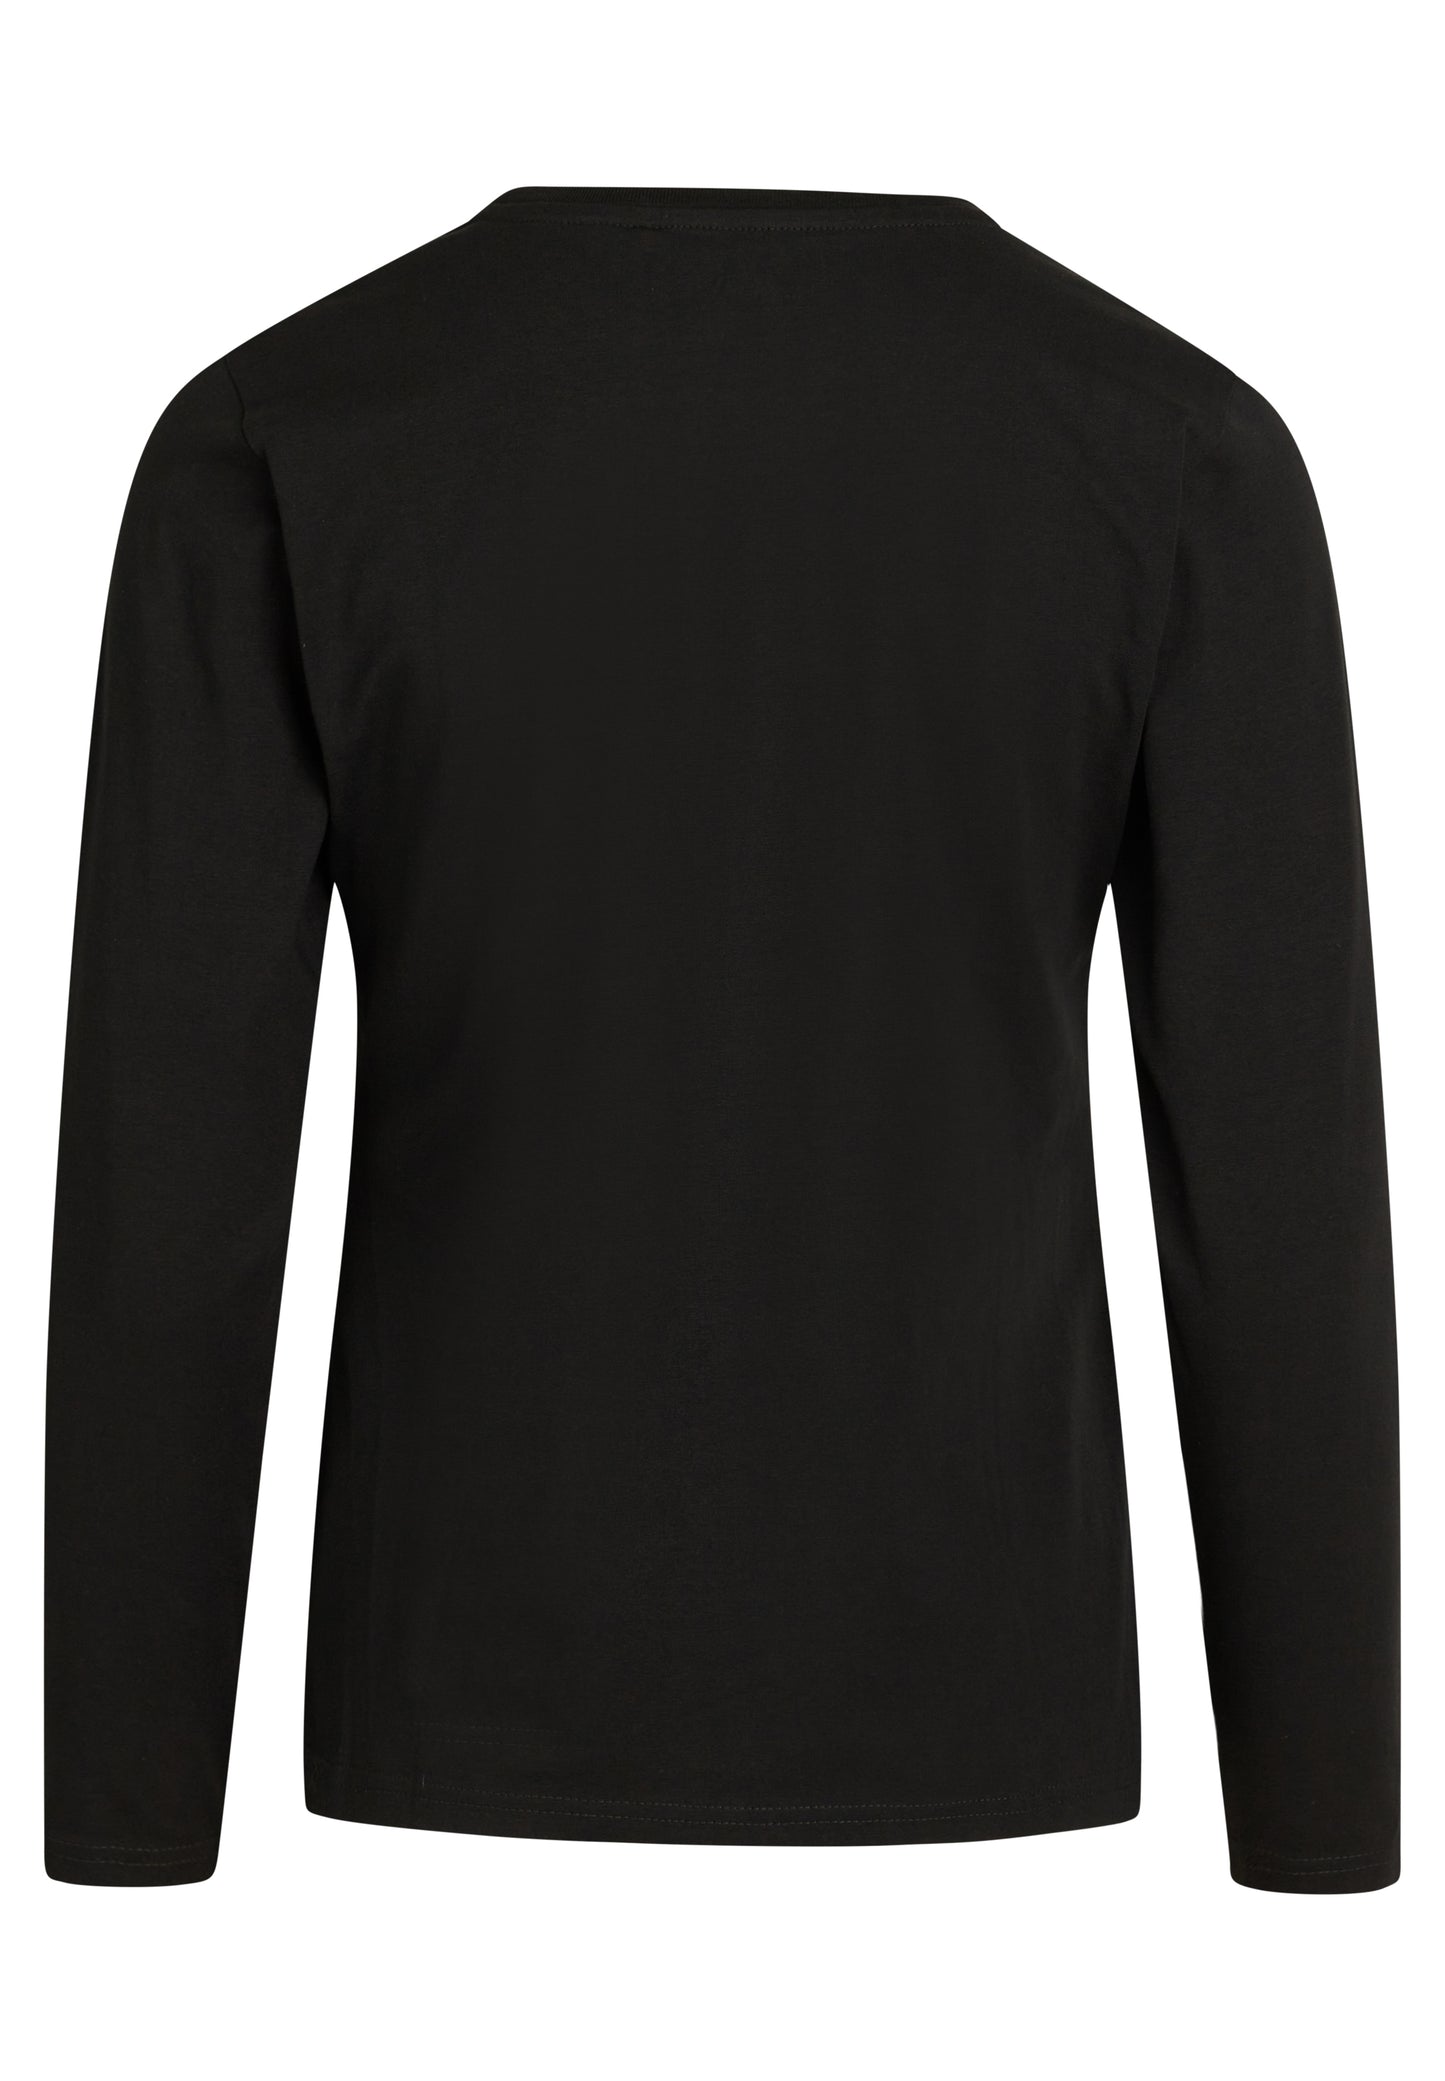 NORVIG Langærmet T-shirt til kvinder sort